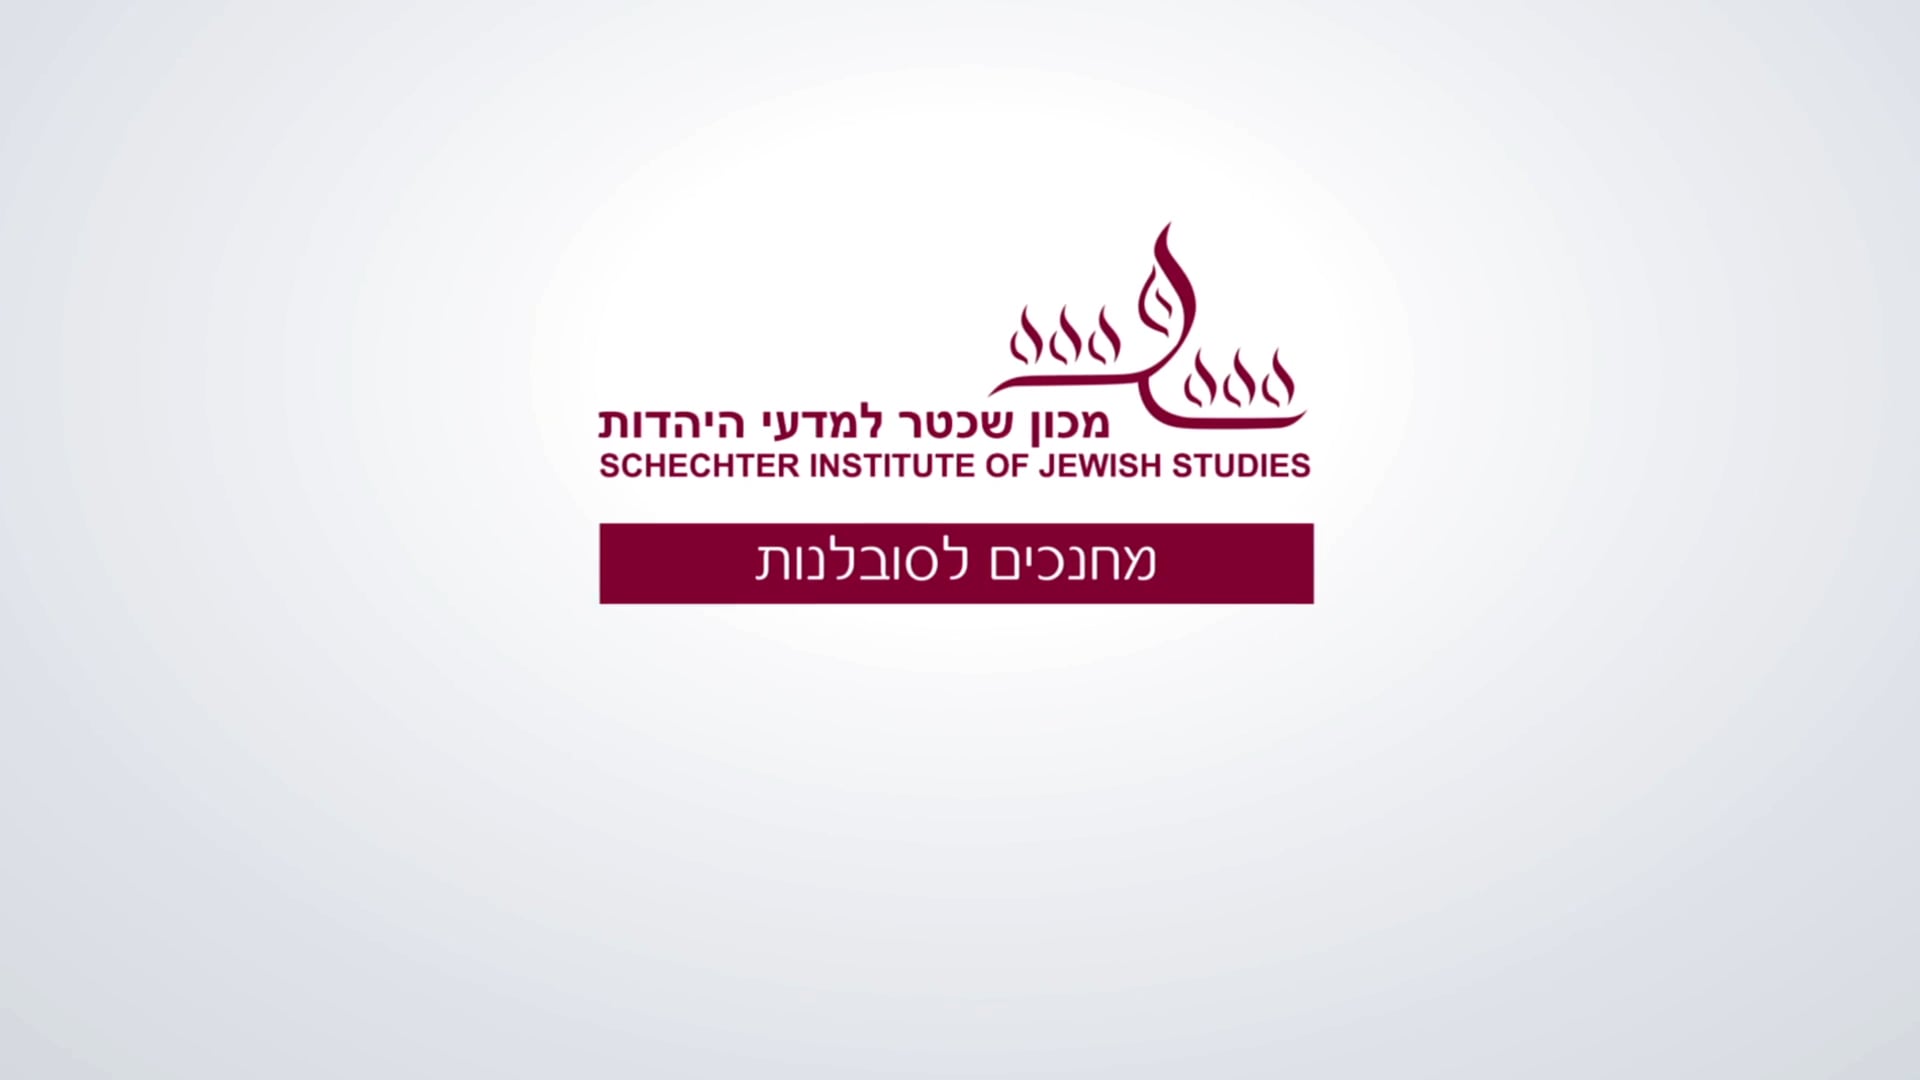 Schechter Institute of Jewish studies